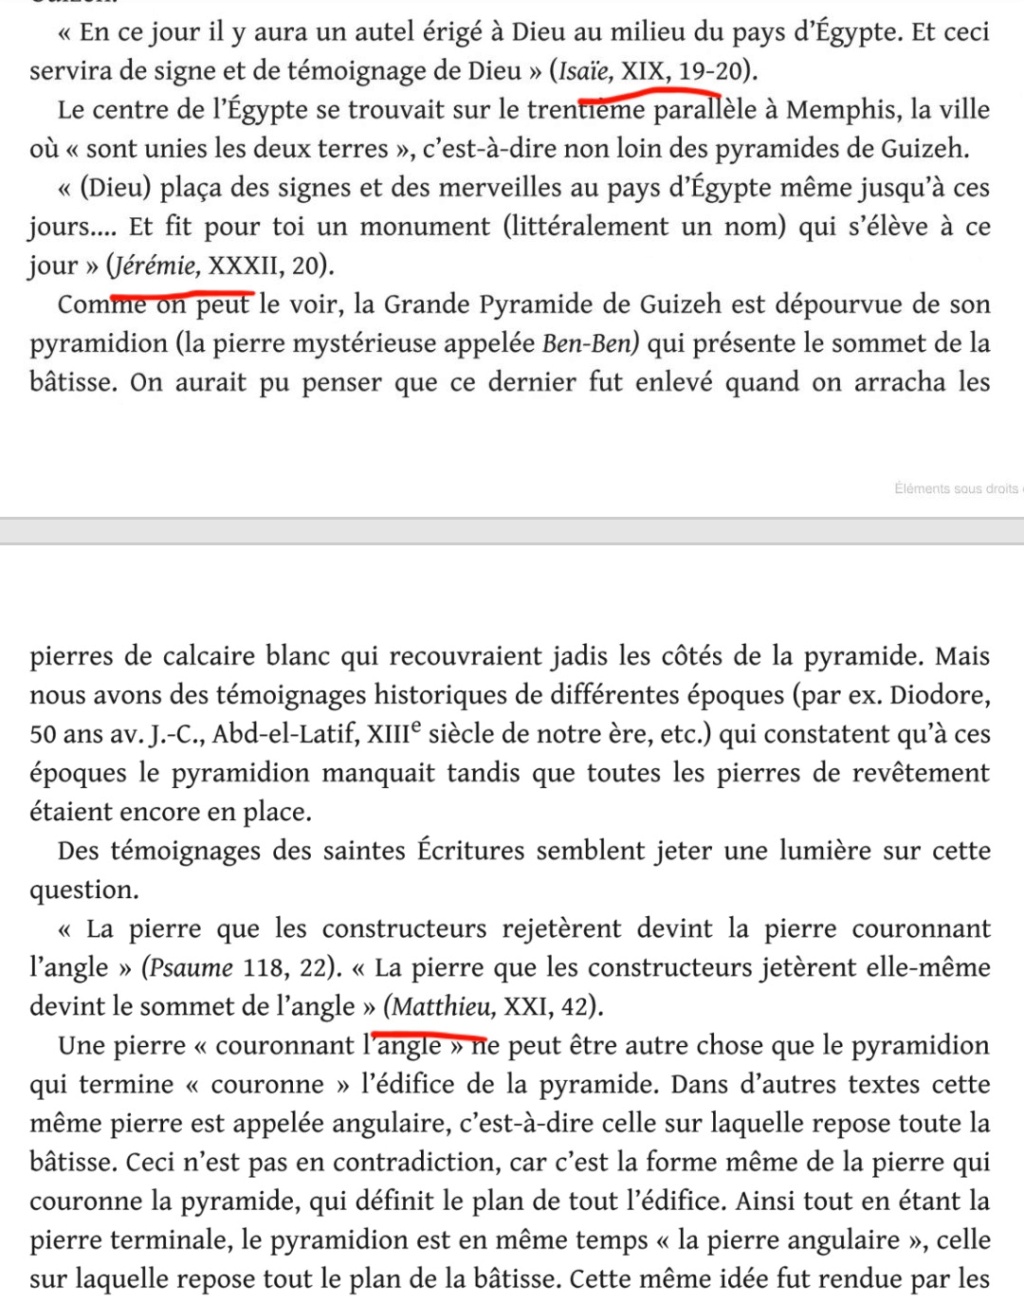 La franc-maçonnerie, la Gnose et le gnosticisme.  - Page 7 Scree634